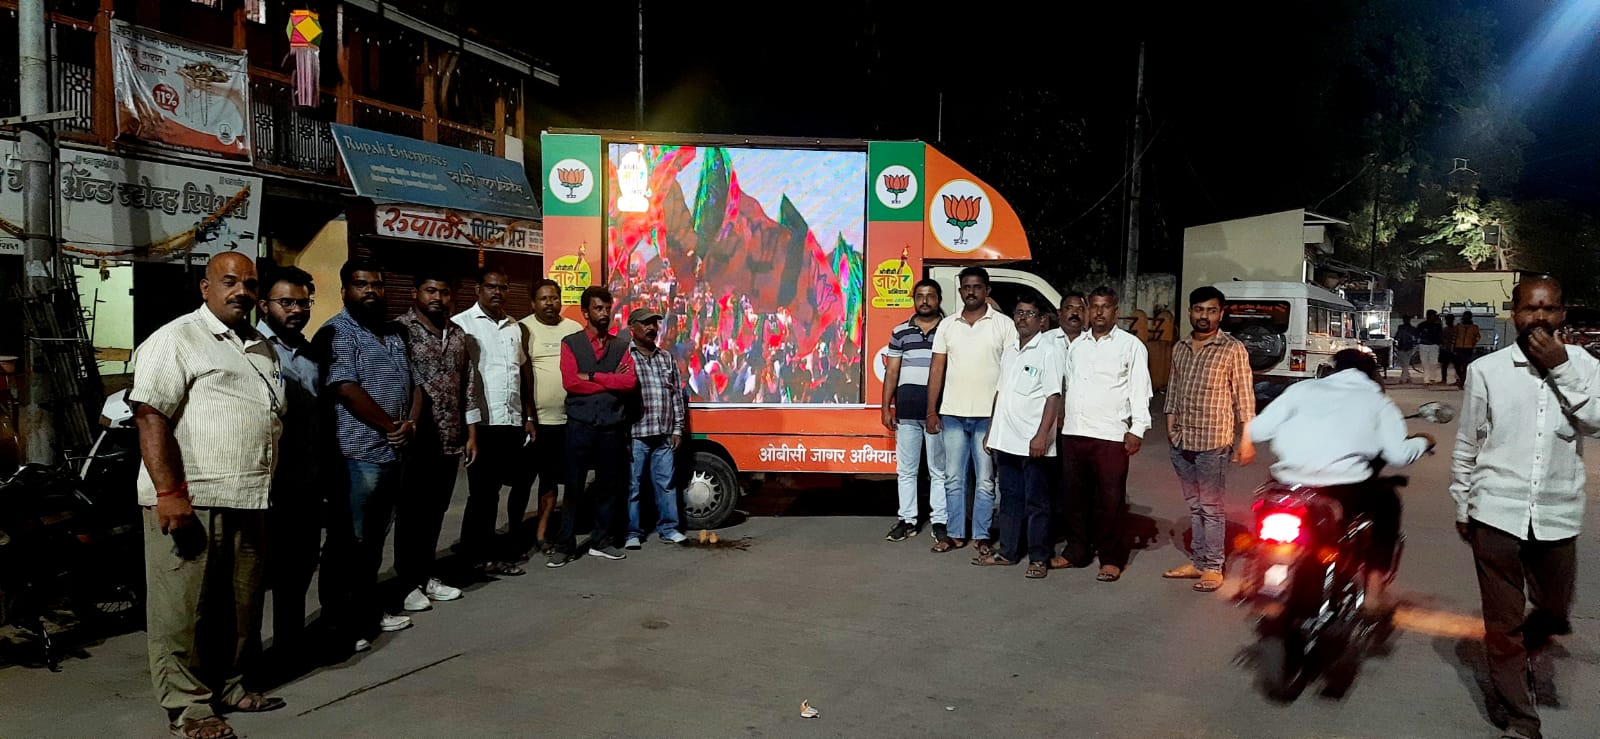 भाजपा ओबीसी जागर अभियान रथाचे शिरवळ मध्ये स्वागत